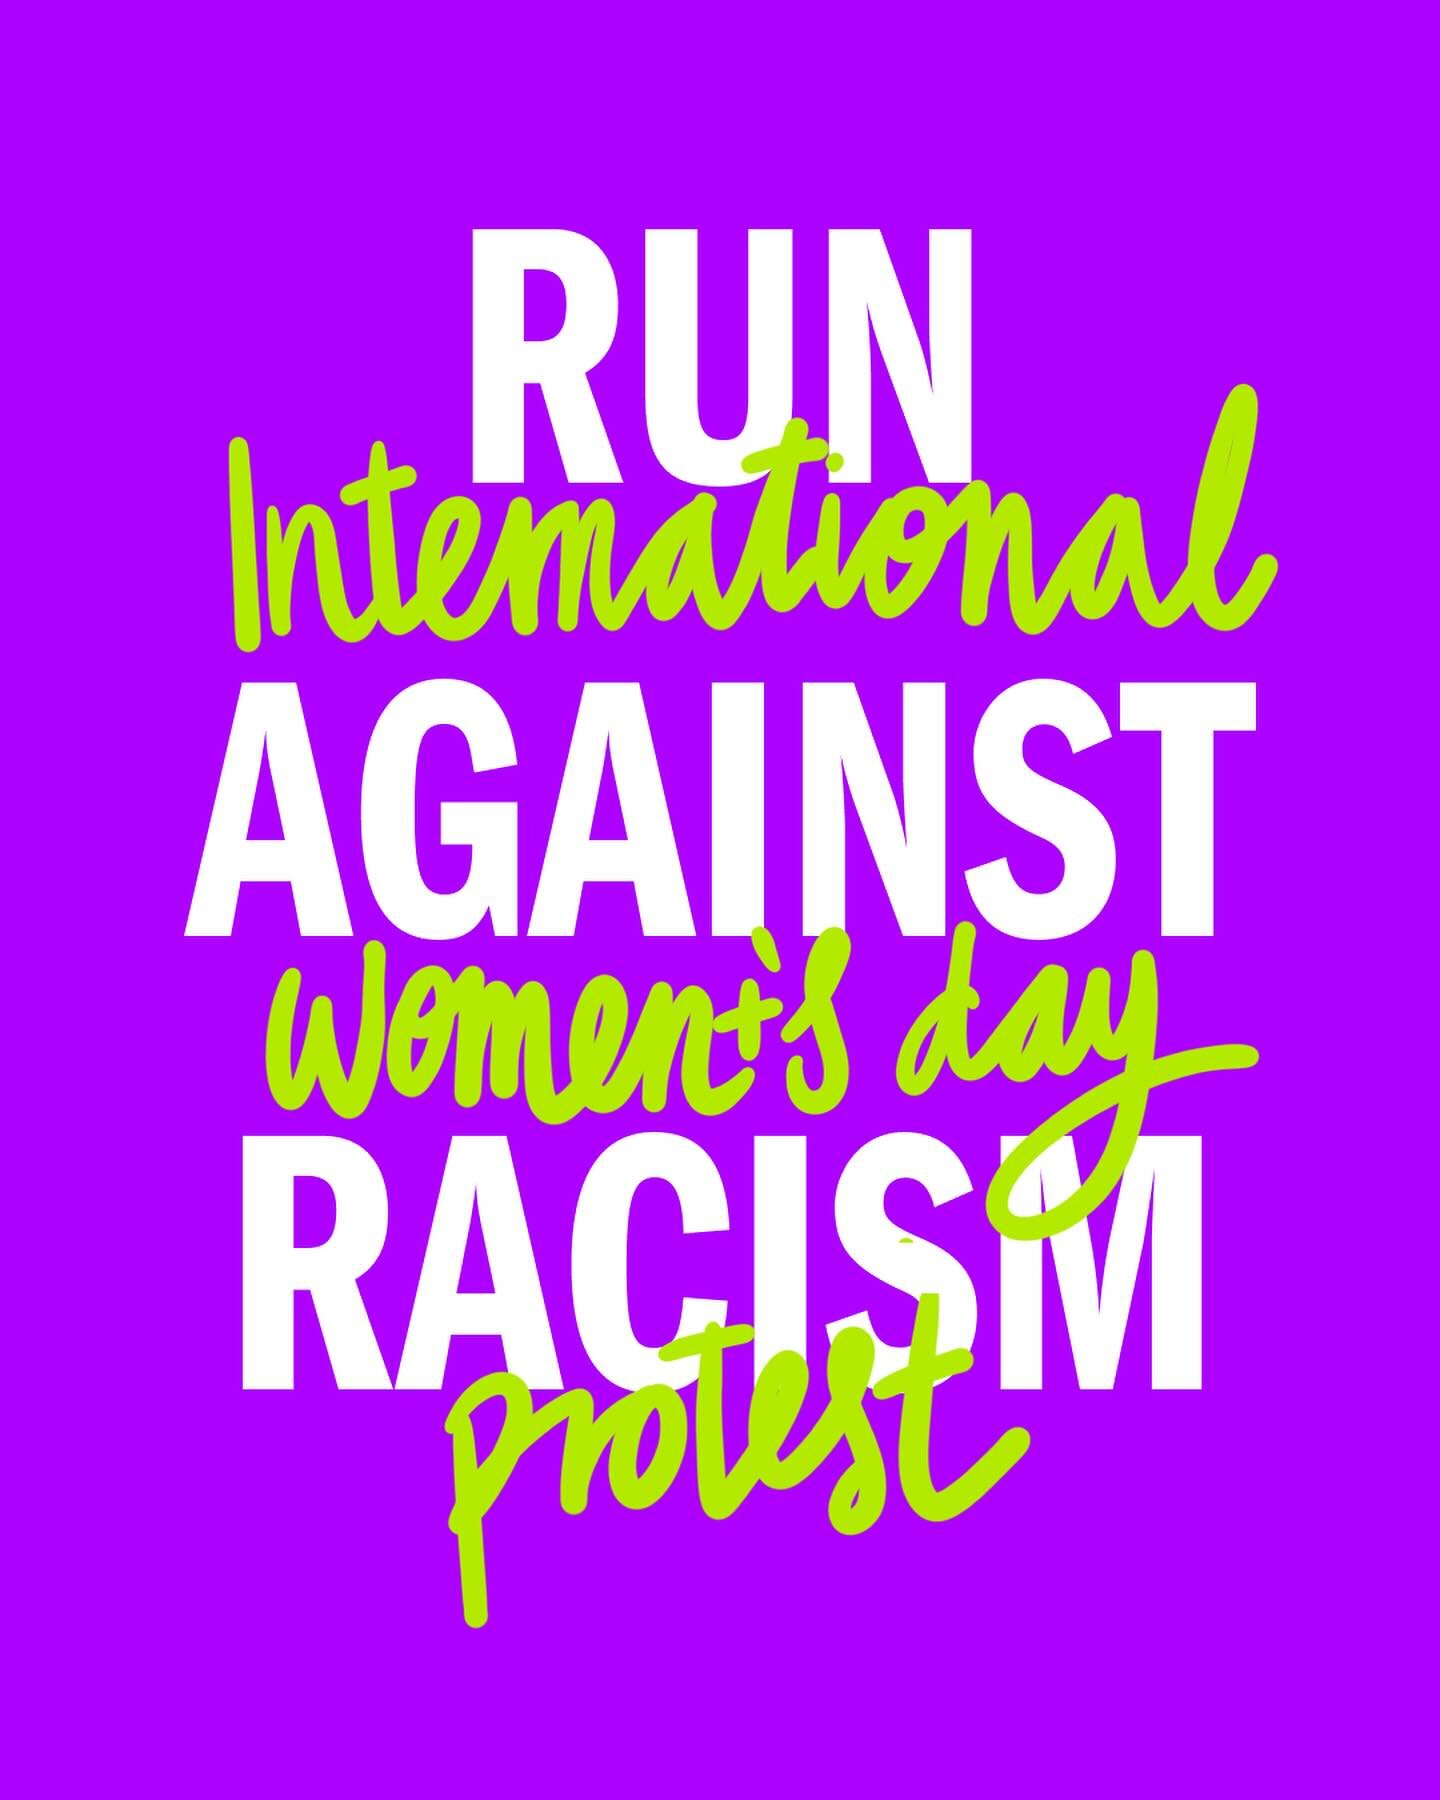 LAUT. GEGEN. RASSISMUS.

🏃&zwj;♀️ Sei dabei! Am 7. M&auml;rz widmen wir unseren Protest zum Internationalen feministischen Kampftag marginalisierten Gruppen: denjenigen, die mit Rassismus, Diskriminierung und Gefahr konfrontiert sind. 

Wir rufen di